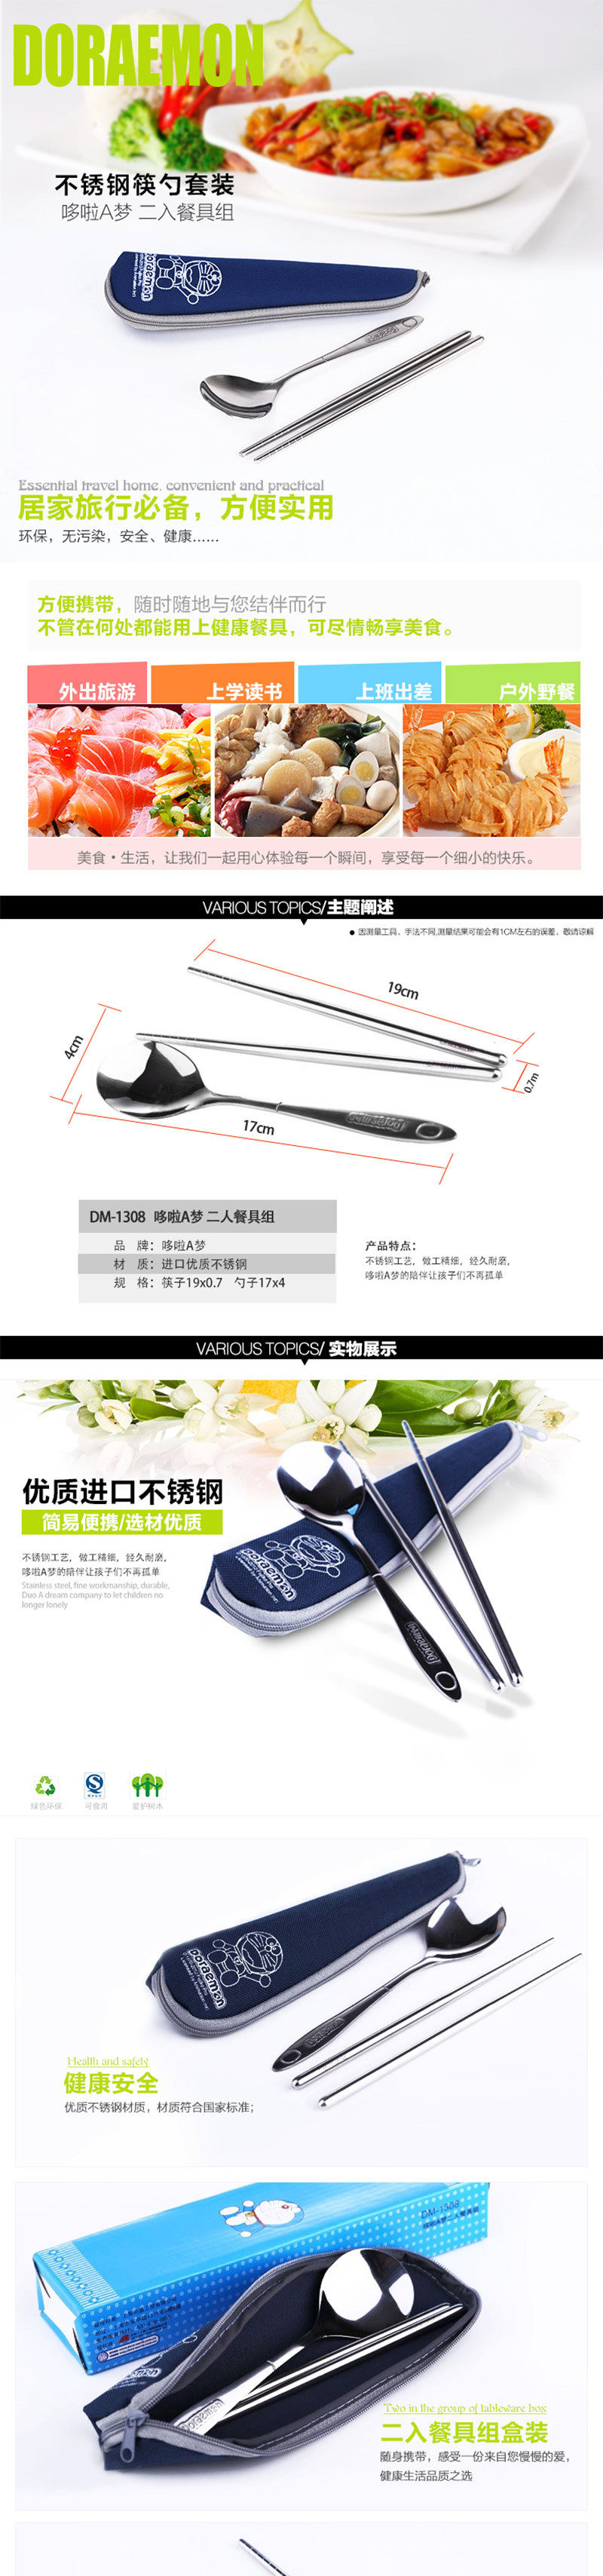 哆啦A梦 DM-1308 二入餐具组不锈钢筷子勺子蓝色卡通袋子